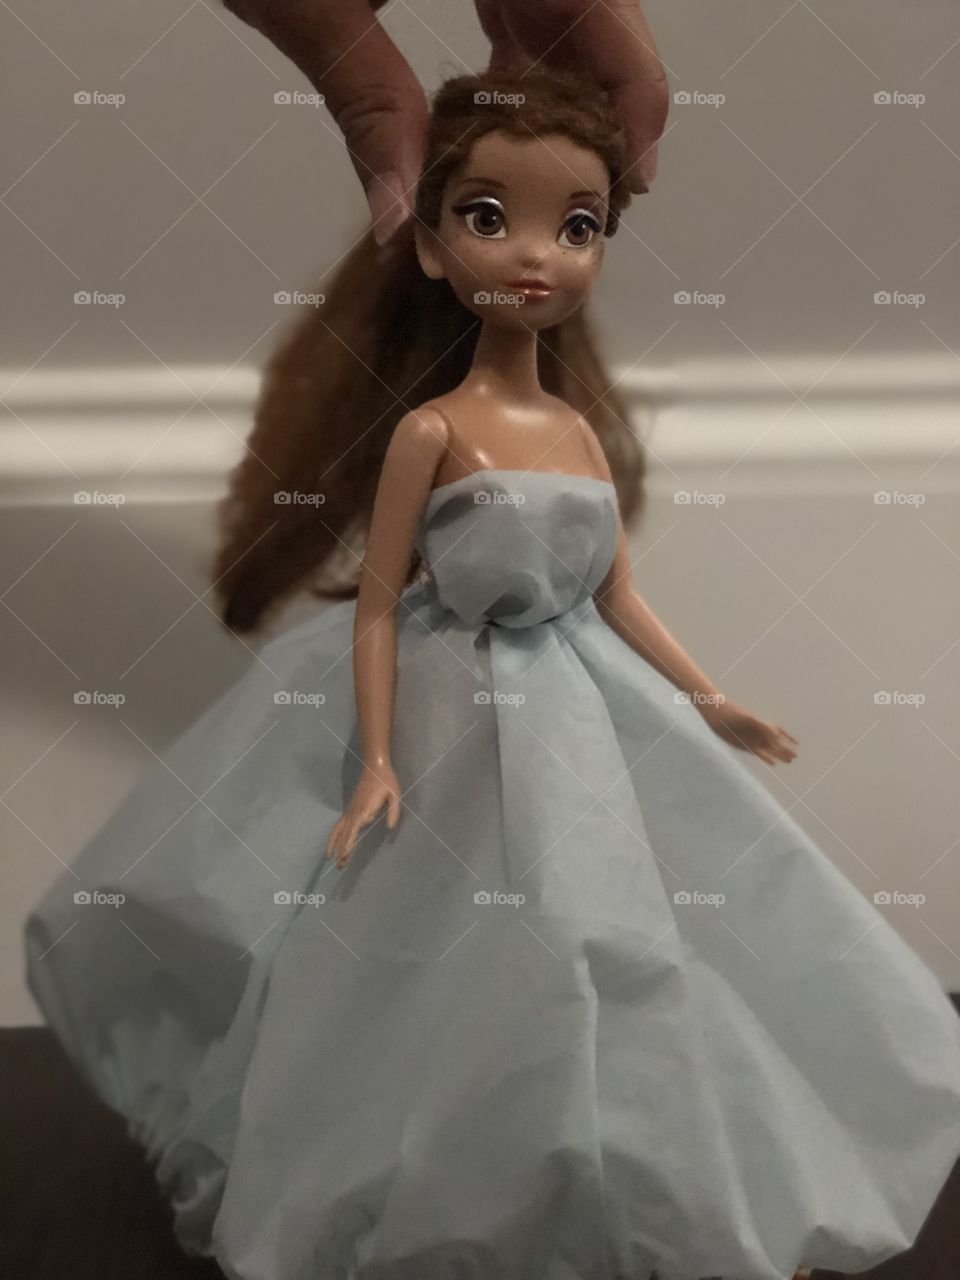 Fashionista - doll wedding dress 